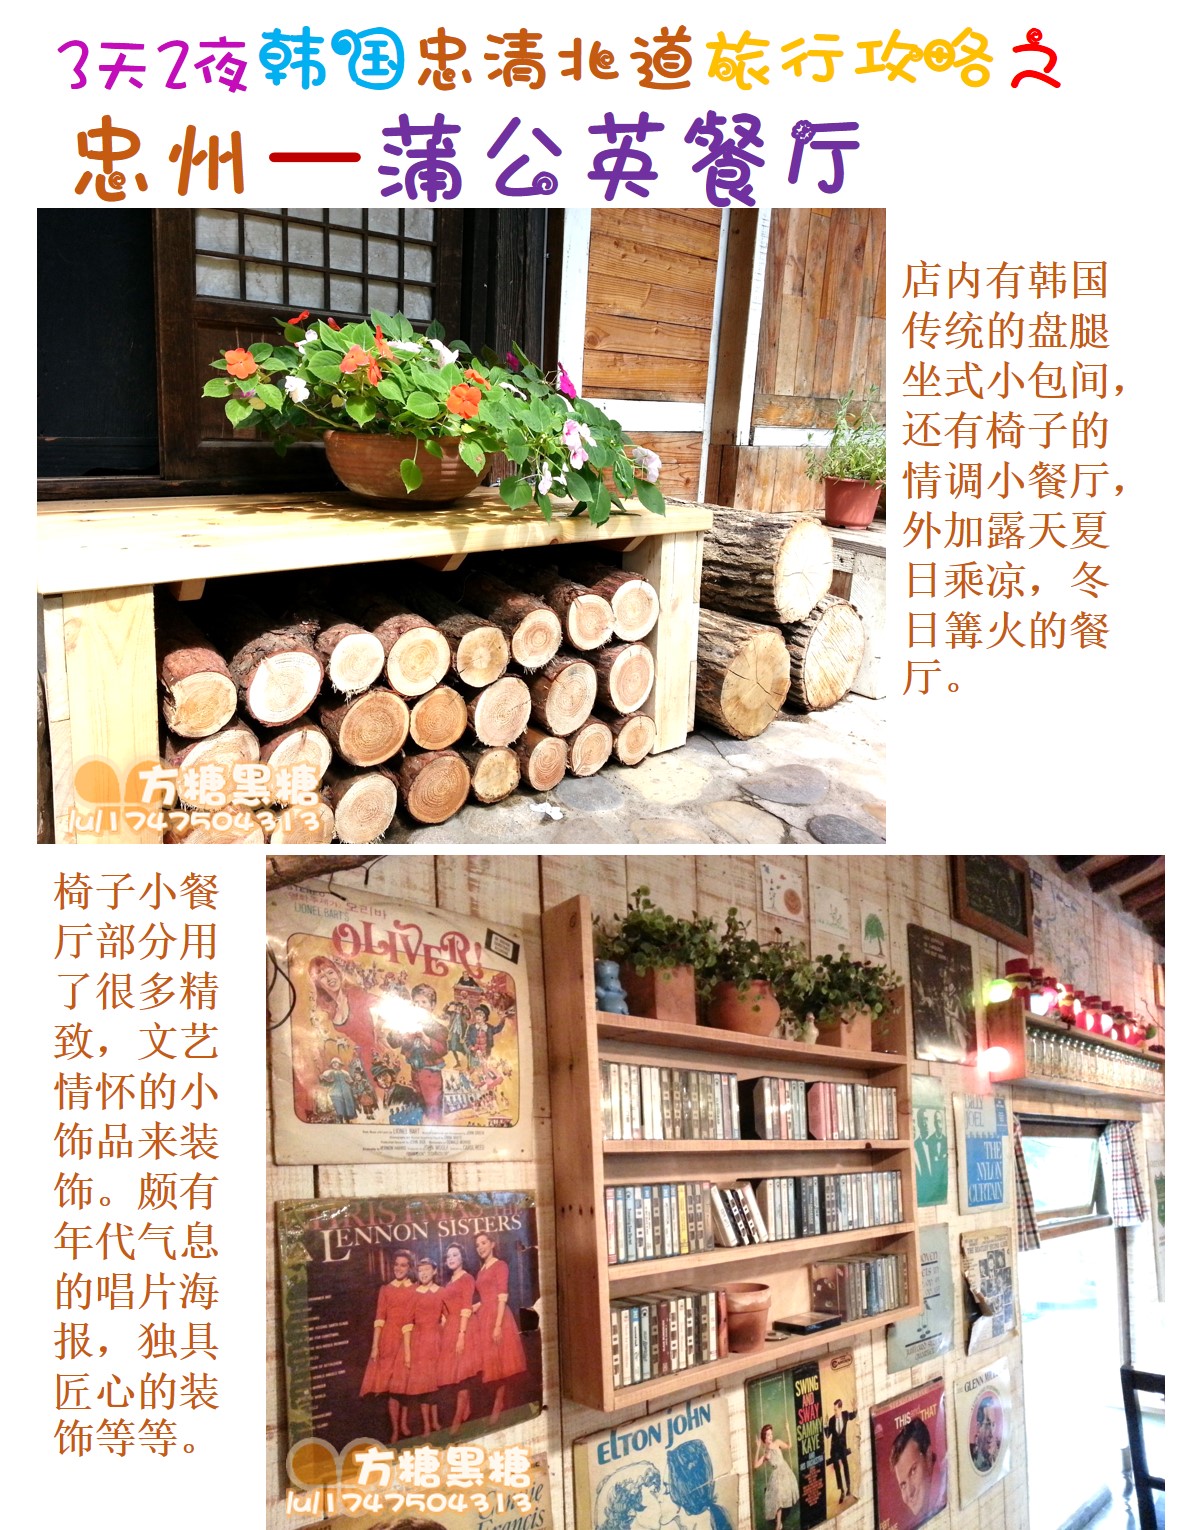 餐厅介绍：  蒲公英餐厅位于韩国忠清北道忠州市。餐厅提供西餐和西式饮品。虽然价格相对偏高，不过它的气